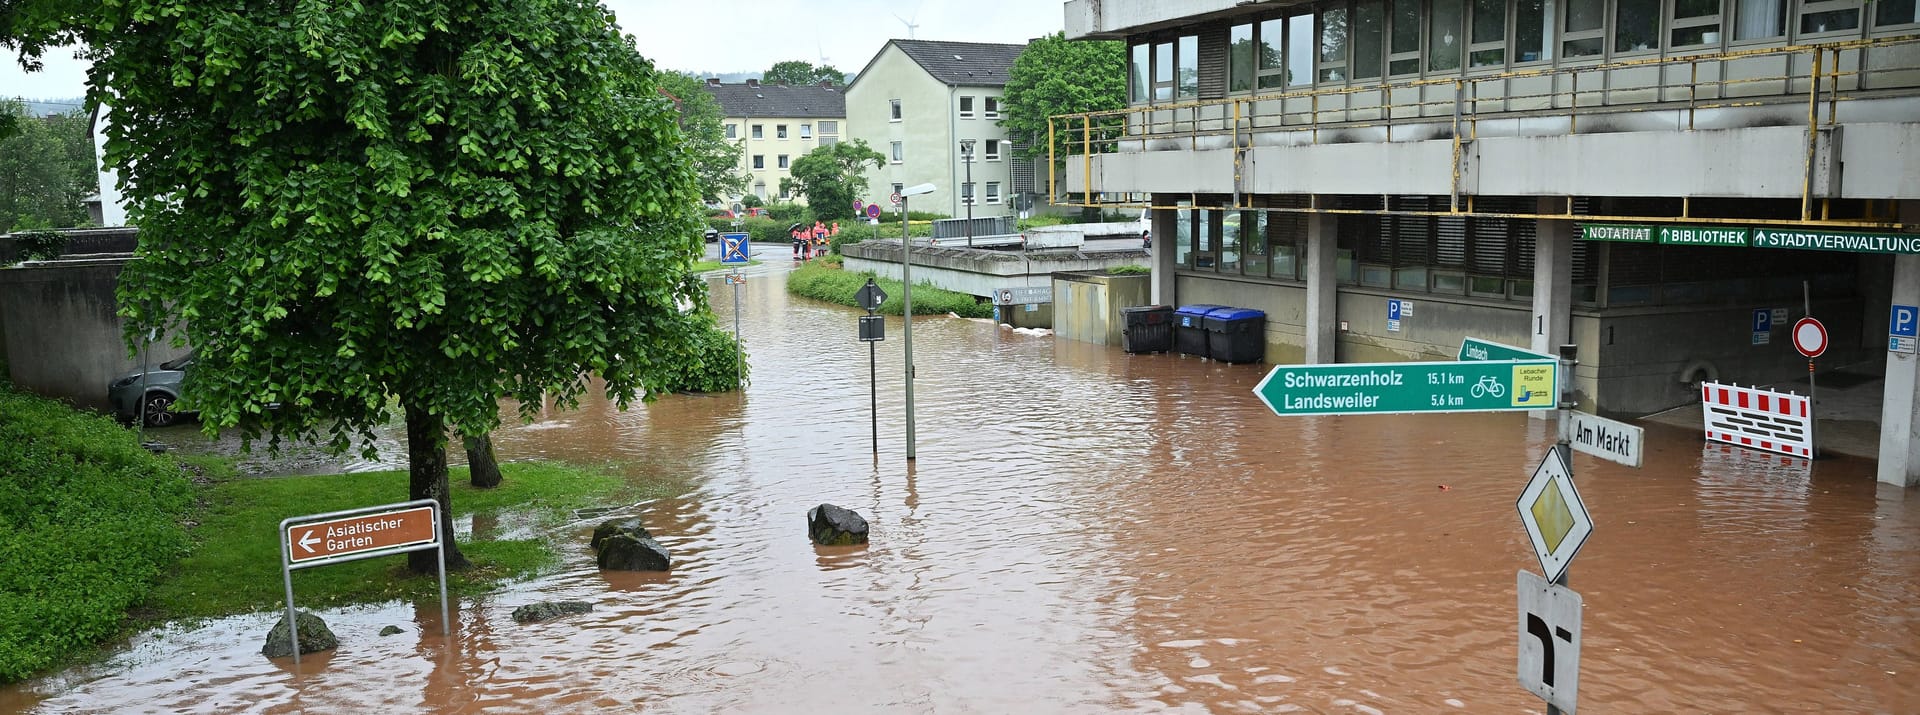 In der saarländischen Stadt Lebach ist die Theel über die Ufer gestiegen ist. Die Umgebung des Rathauses steht unter Wasser.